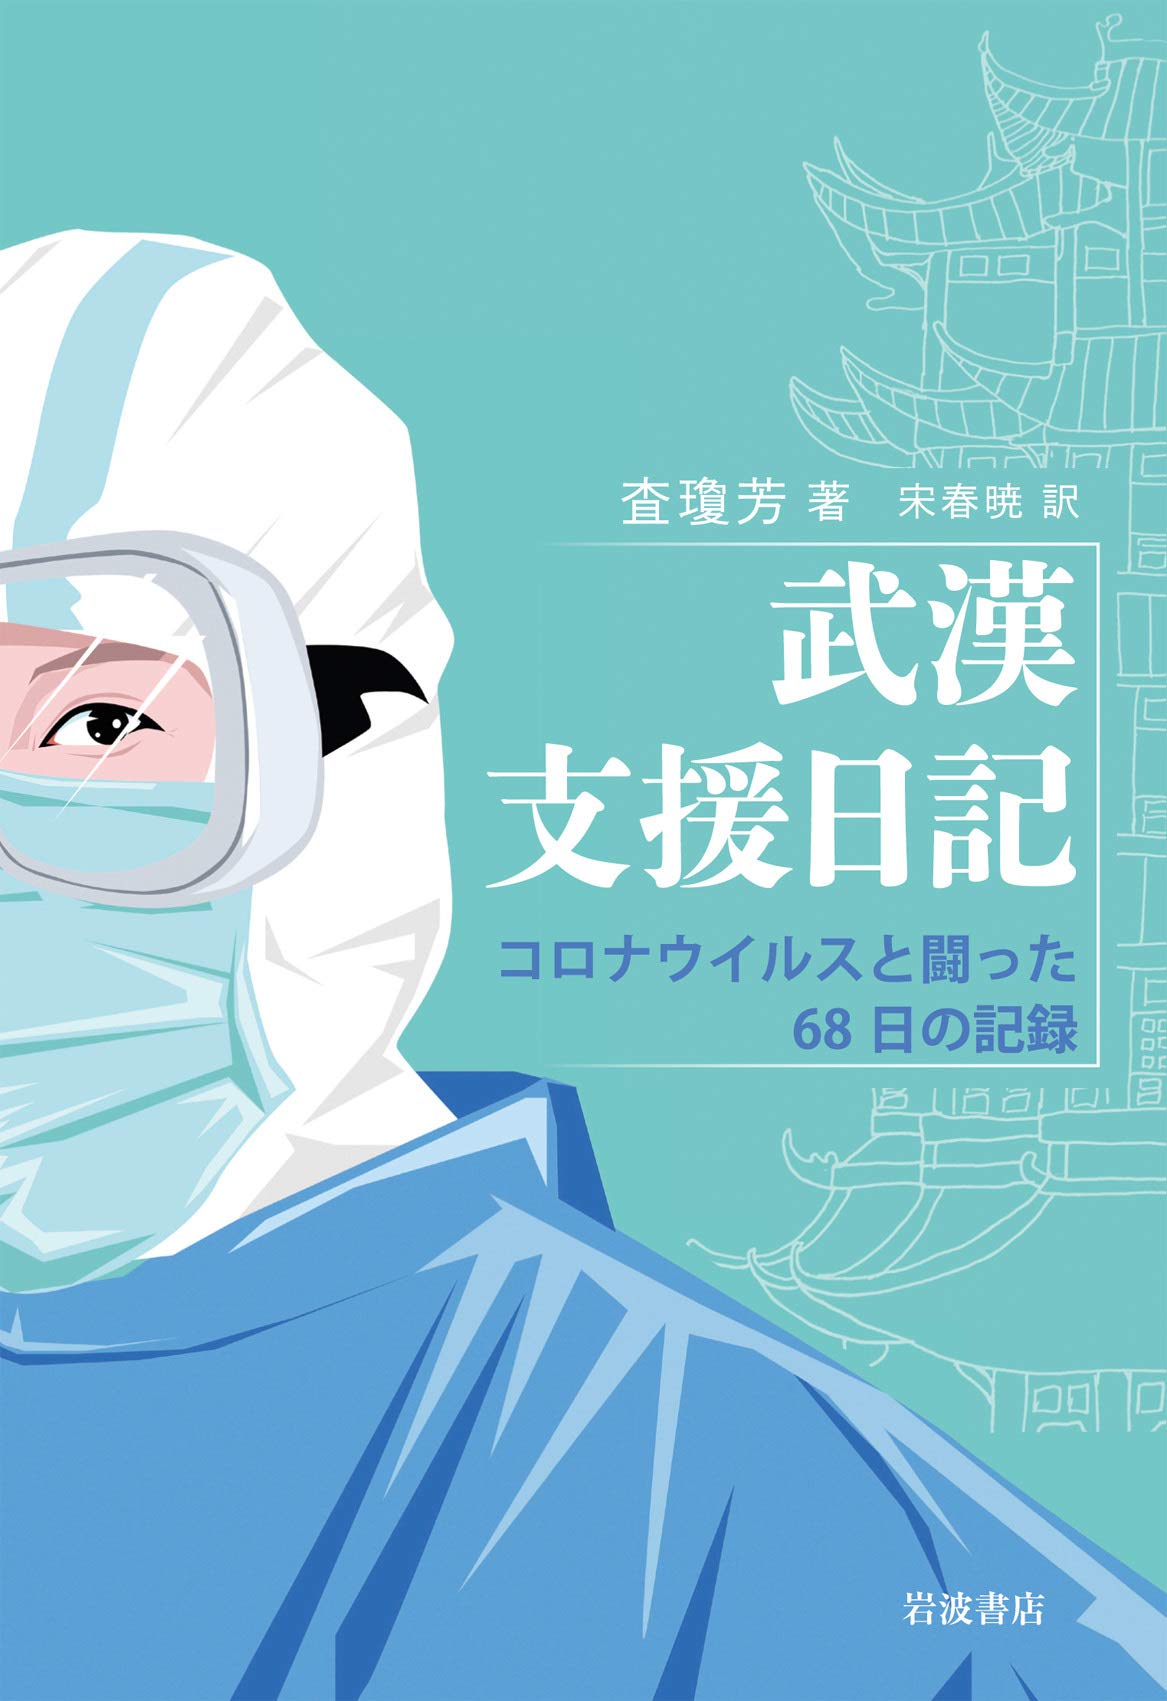 東京で自分らしく生きること  そして韓流  第19回「オリパラというテロ装置 その一」